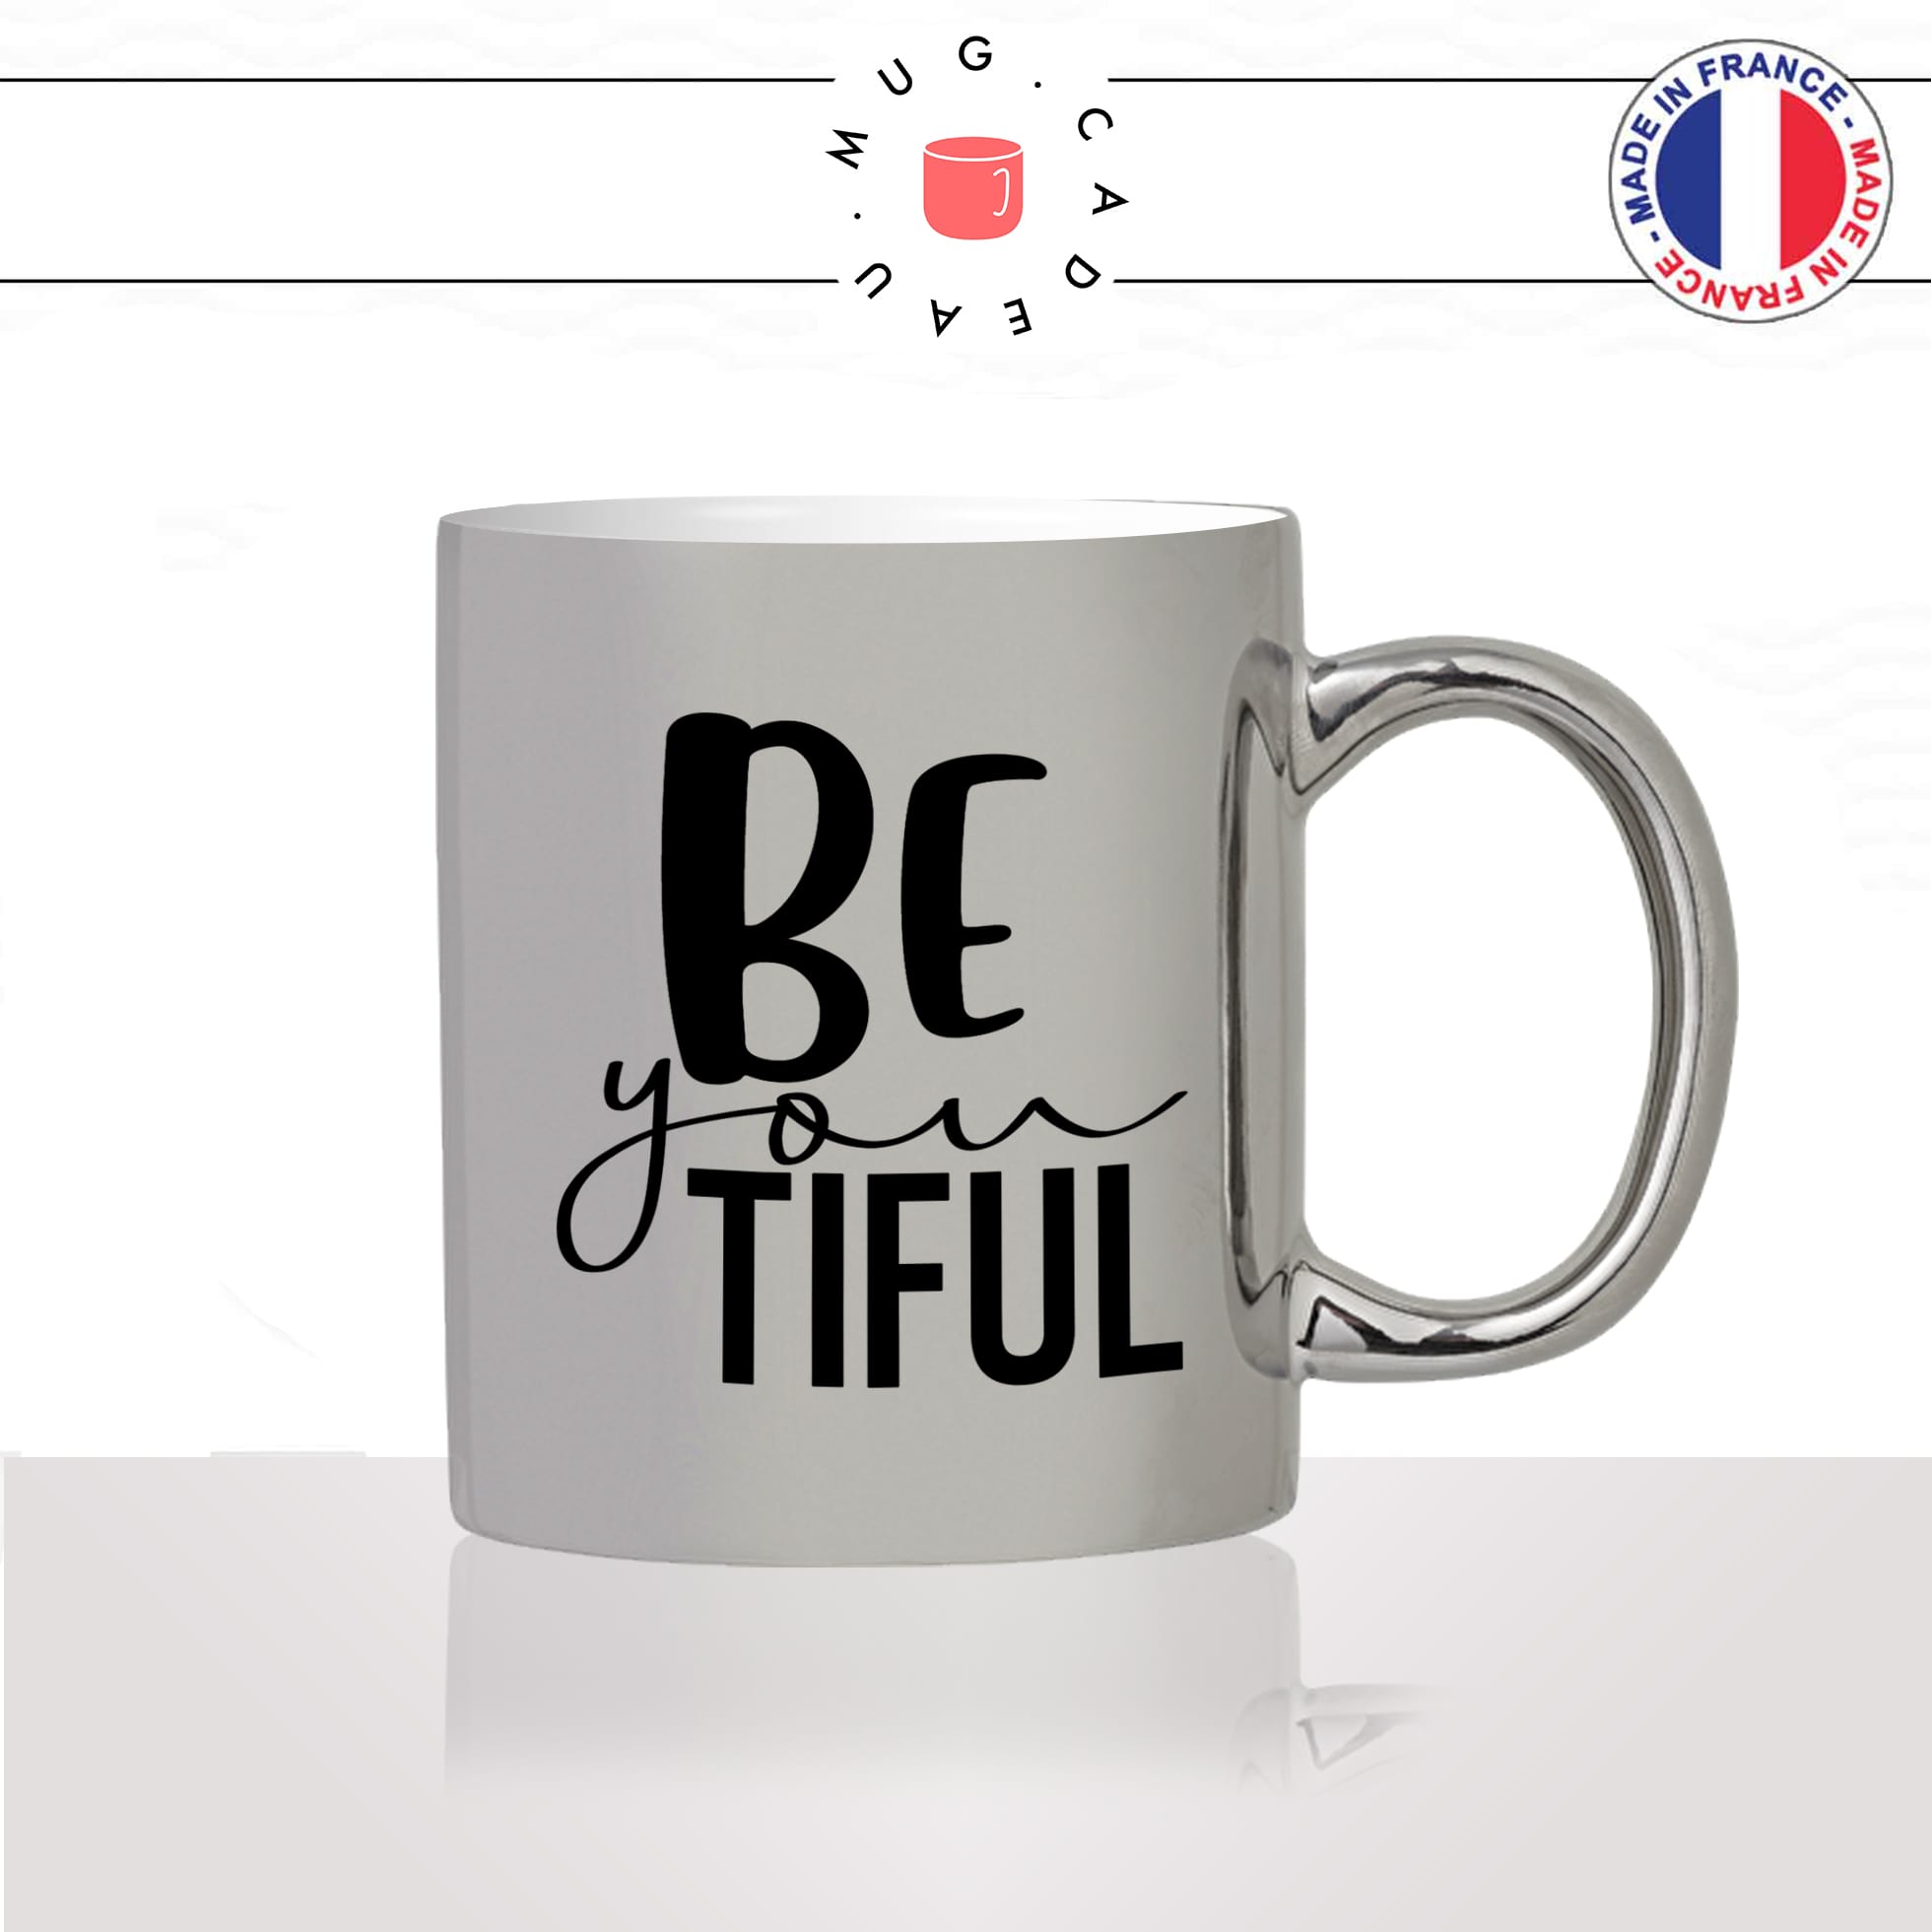 mug-tasse-argent-argenté-silver-beautiful-belle-anglais-jolie-femme-copine-collegue-decoration-humour-idée-cadeau-fun-cool-café-thé-original2-min